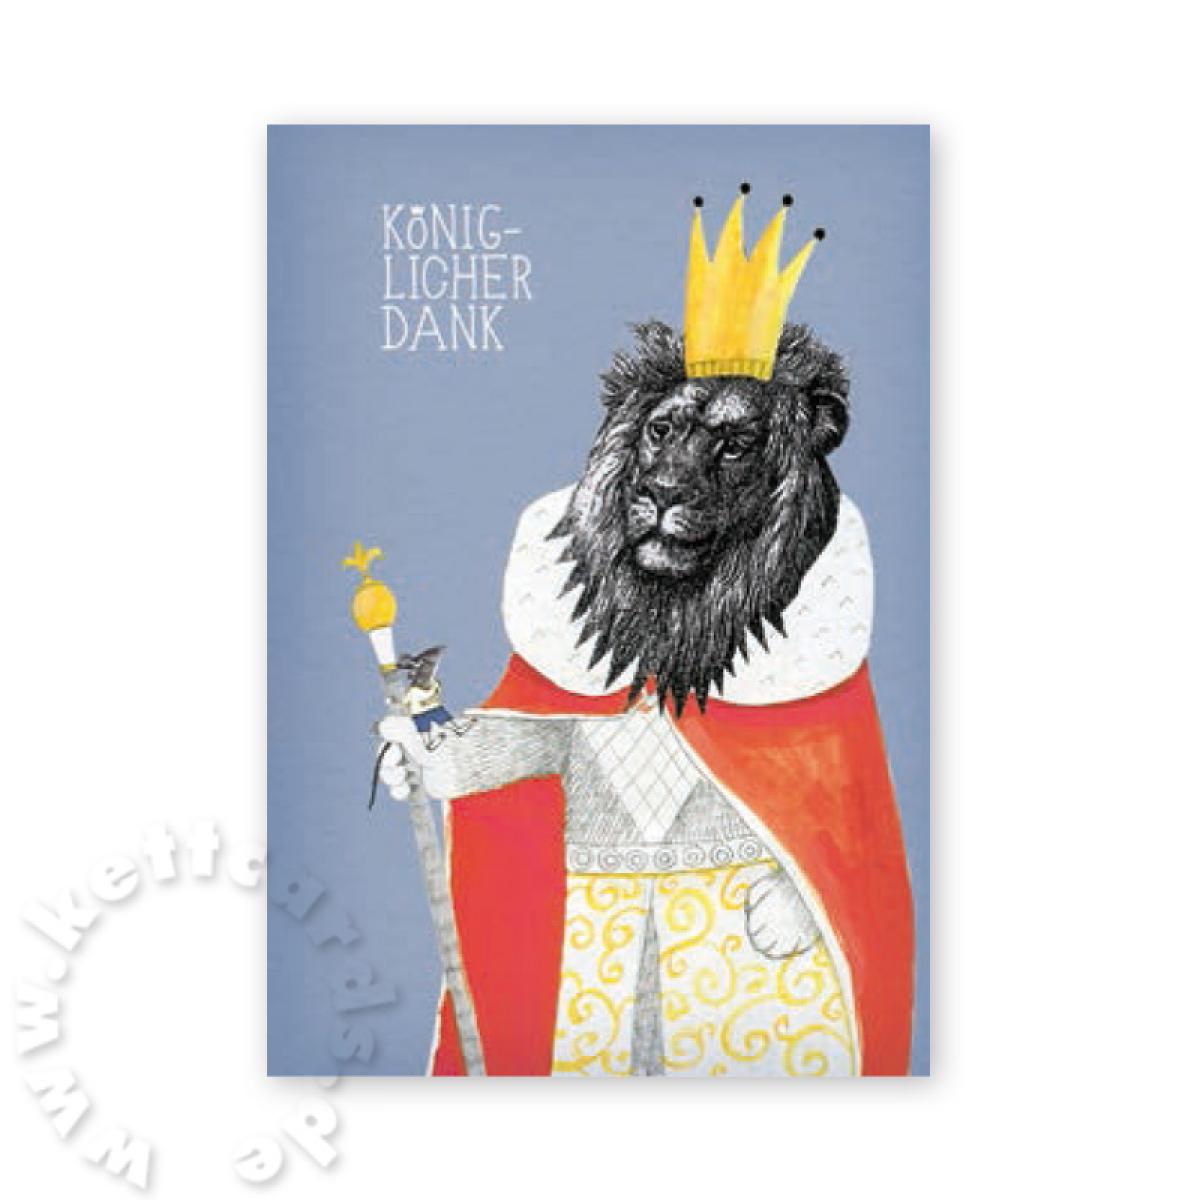 Postkarte mit Löwen: Königlicher Dank